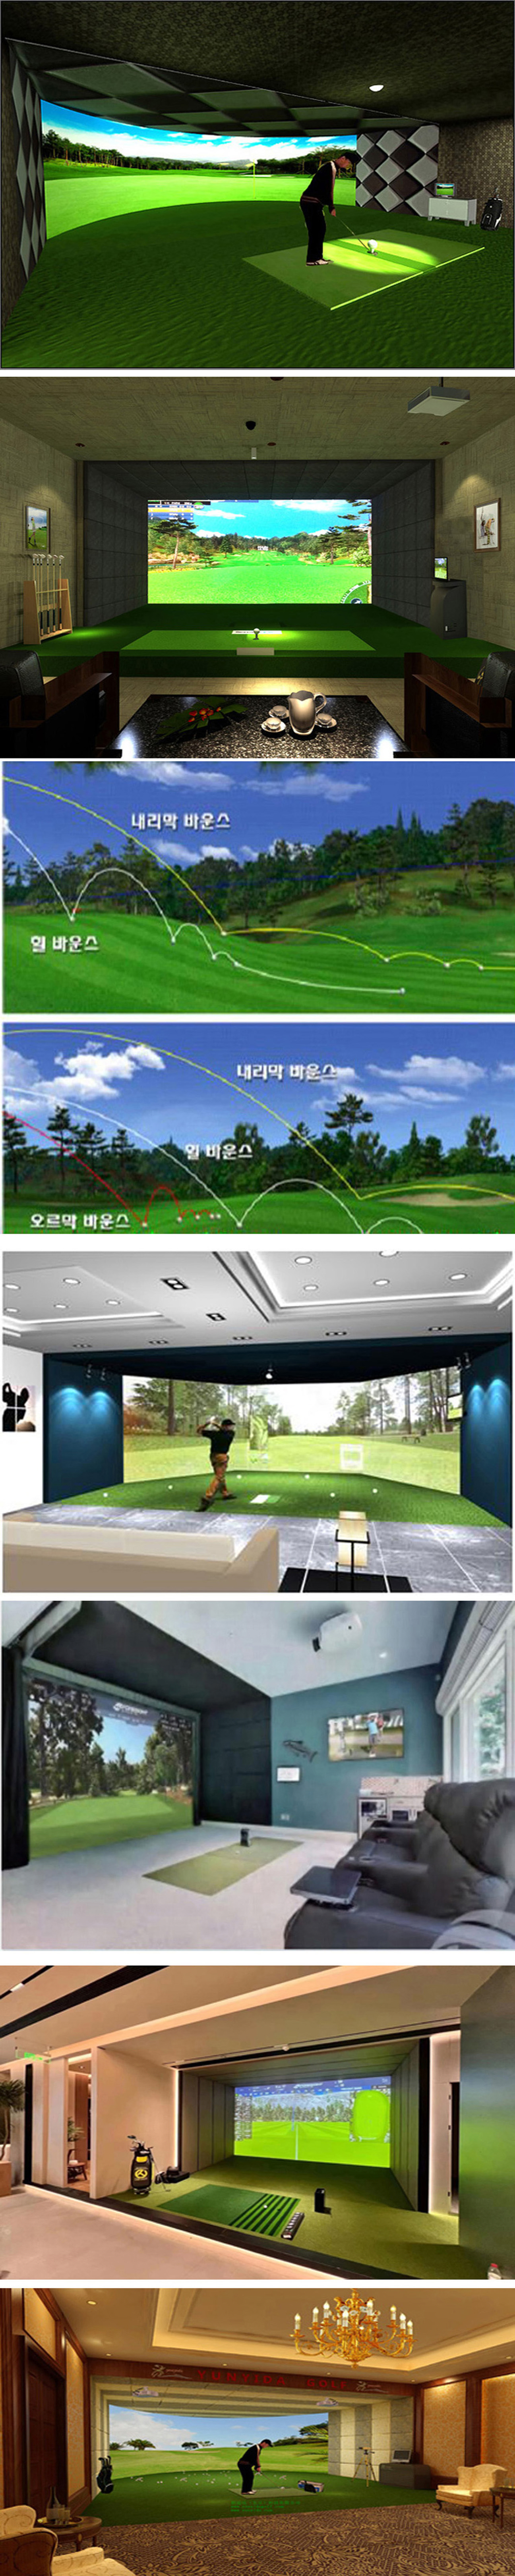 模拟高尔夫练习球馆 2.jpg